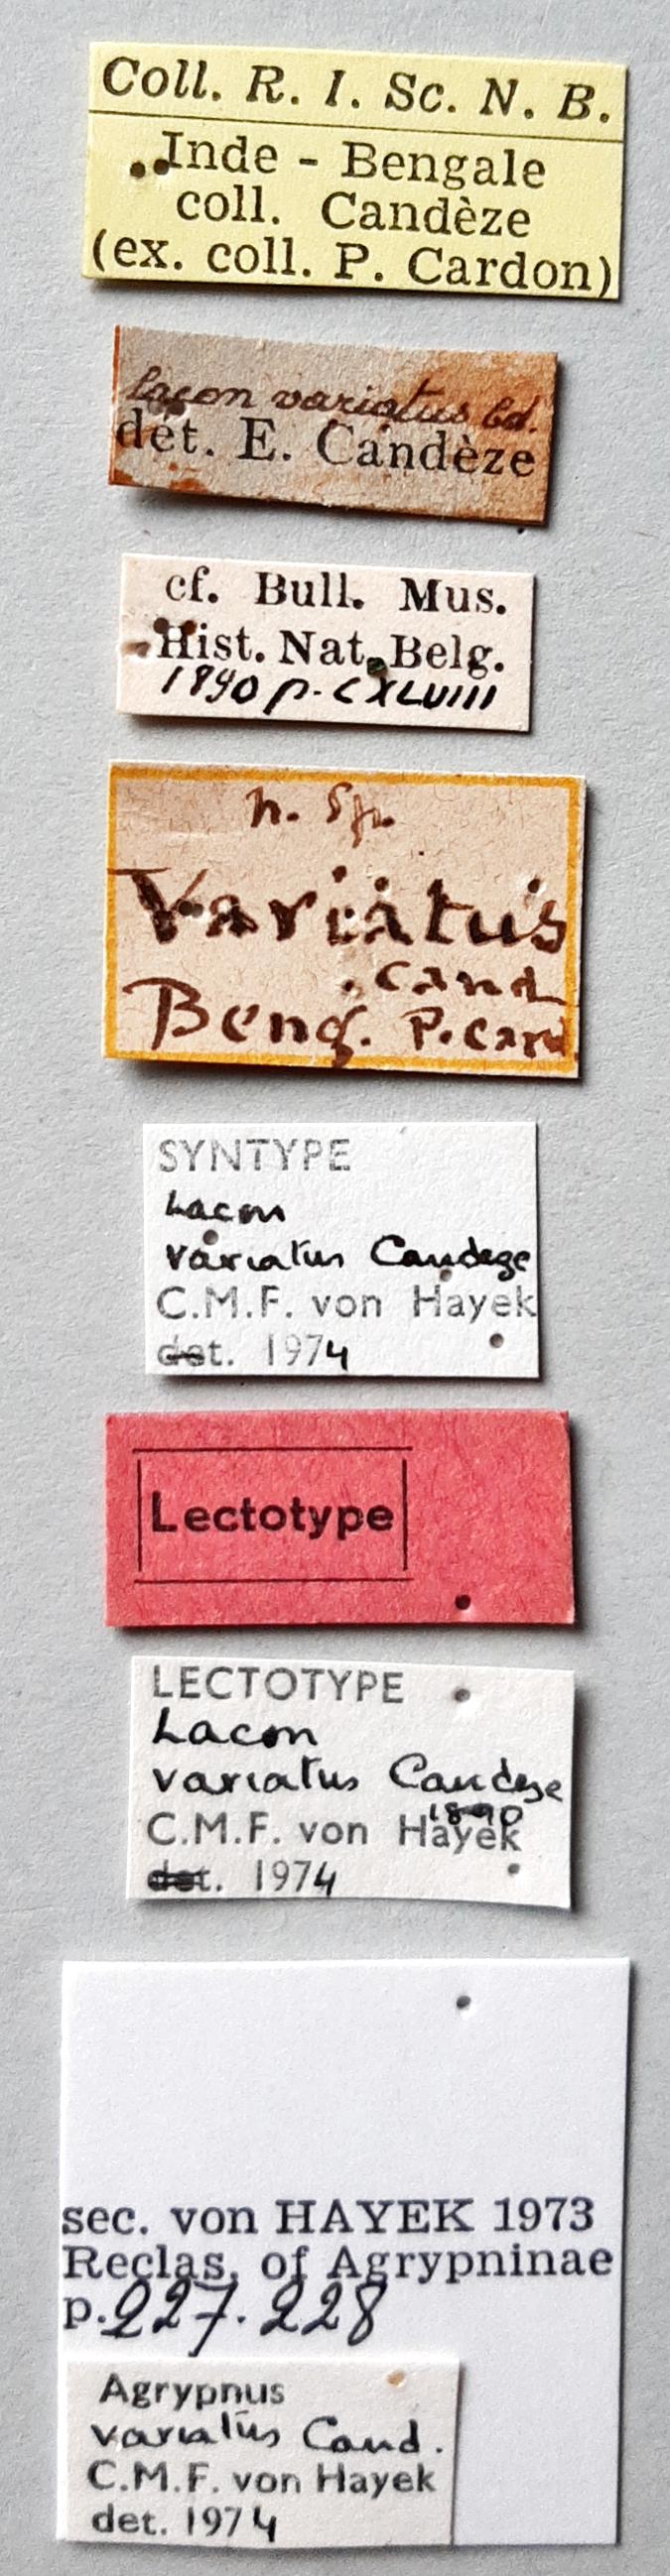 Lacon variatus Lt labels